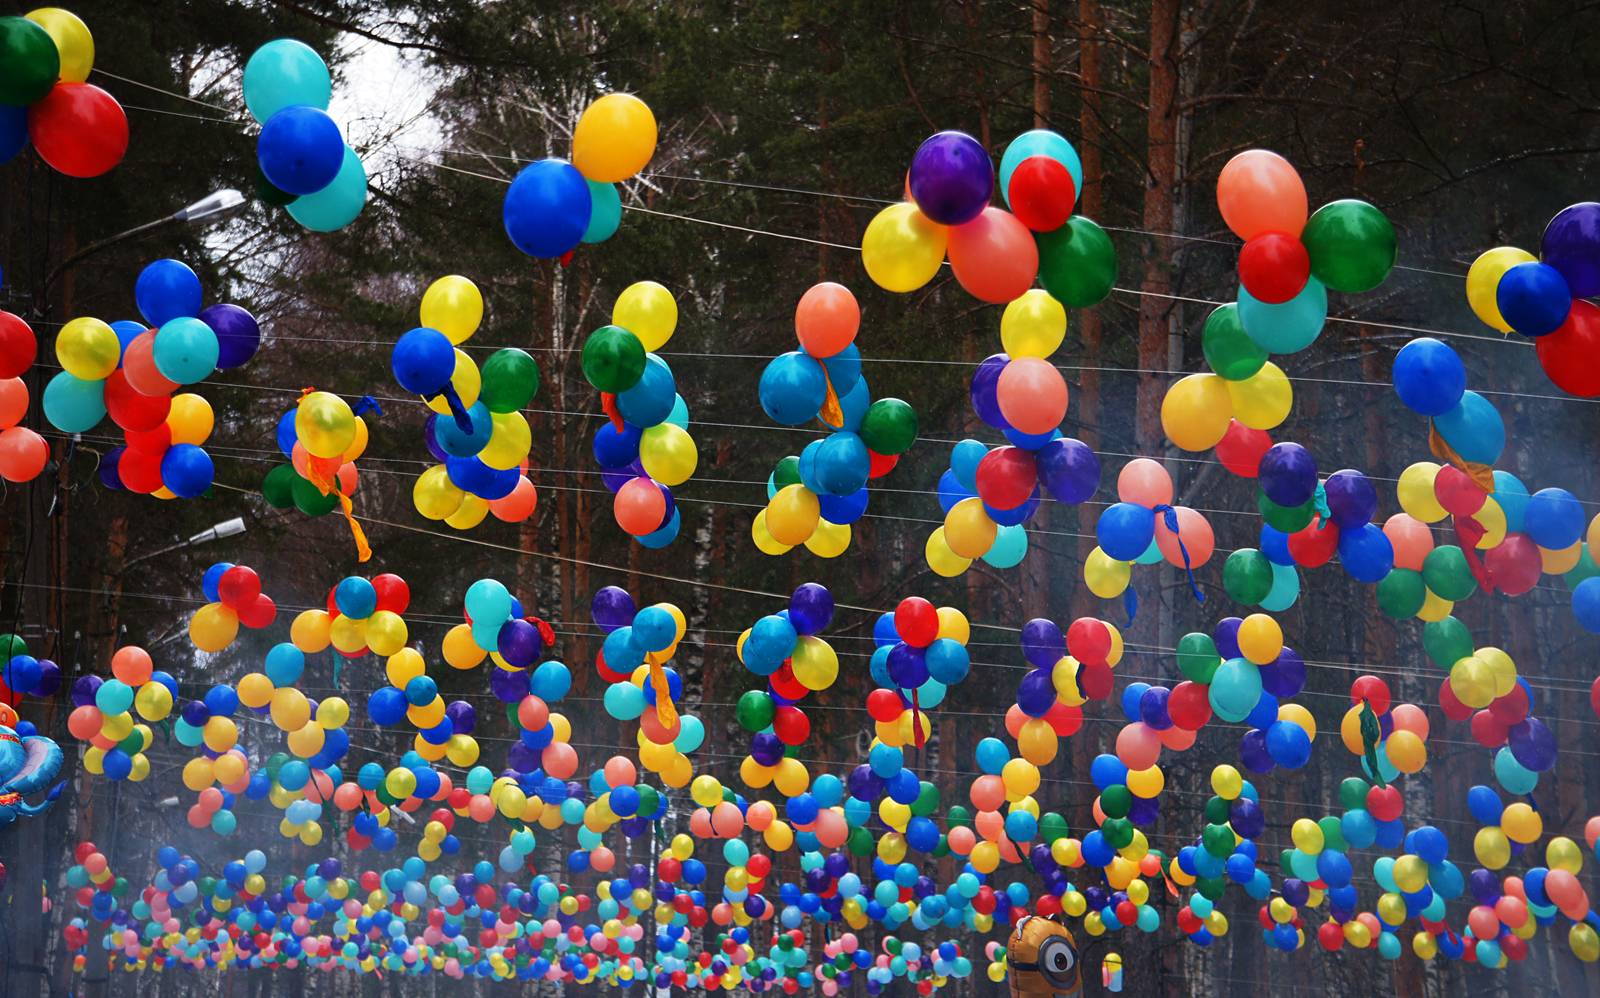 Конкурсы с воздушными шарами на свадьбу (идеи)